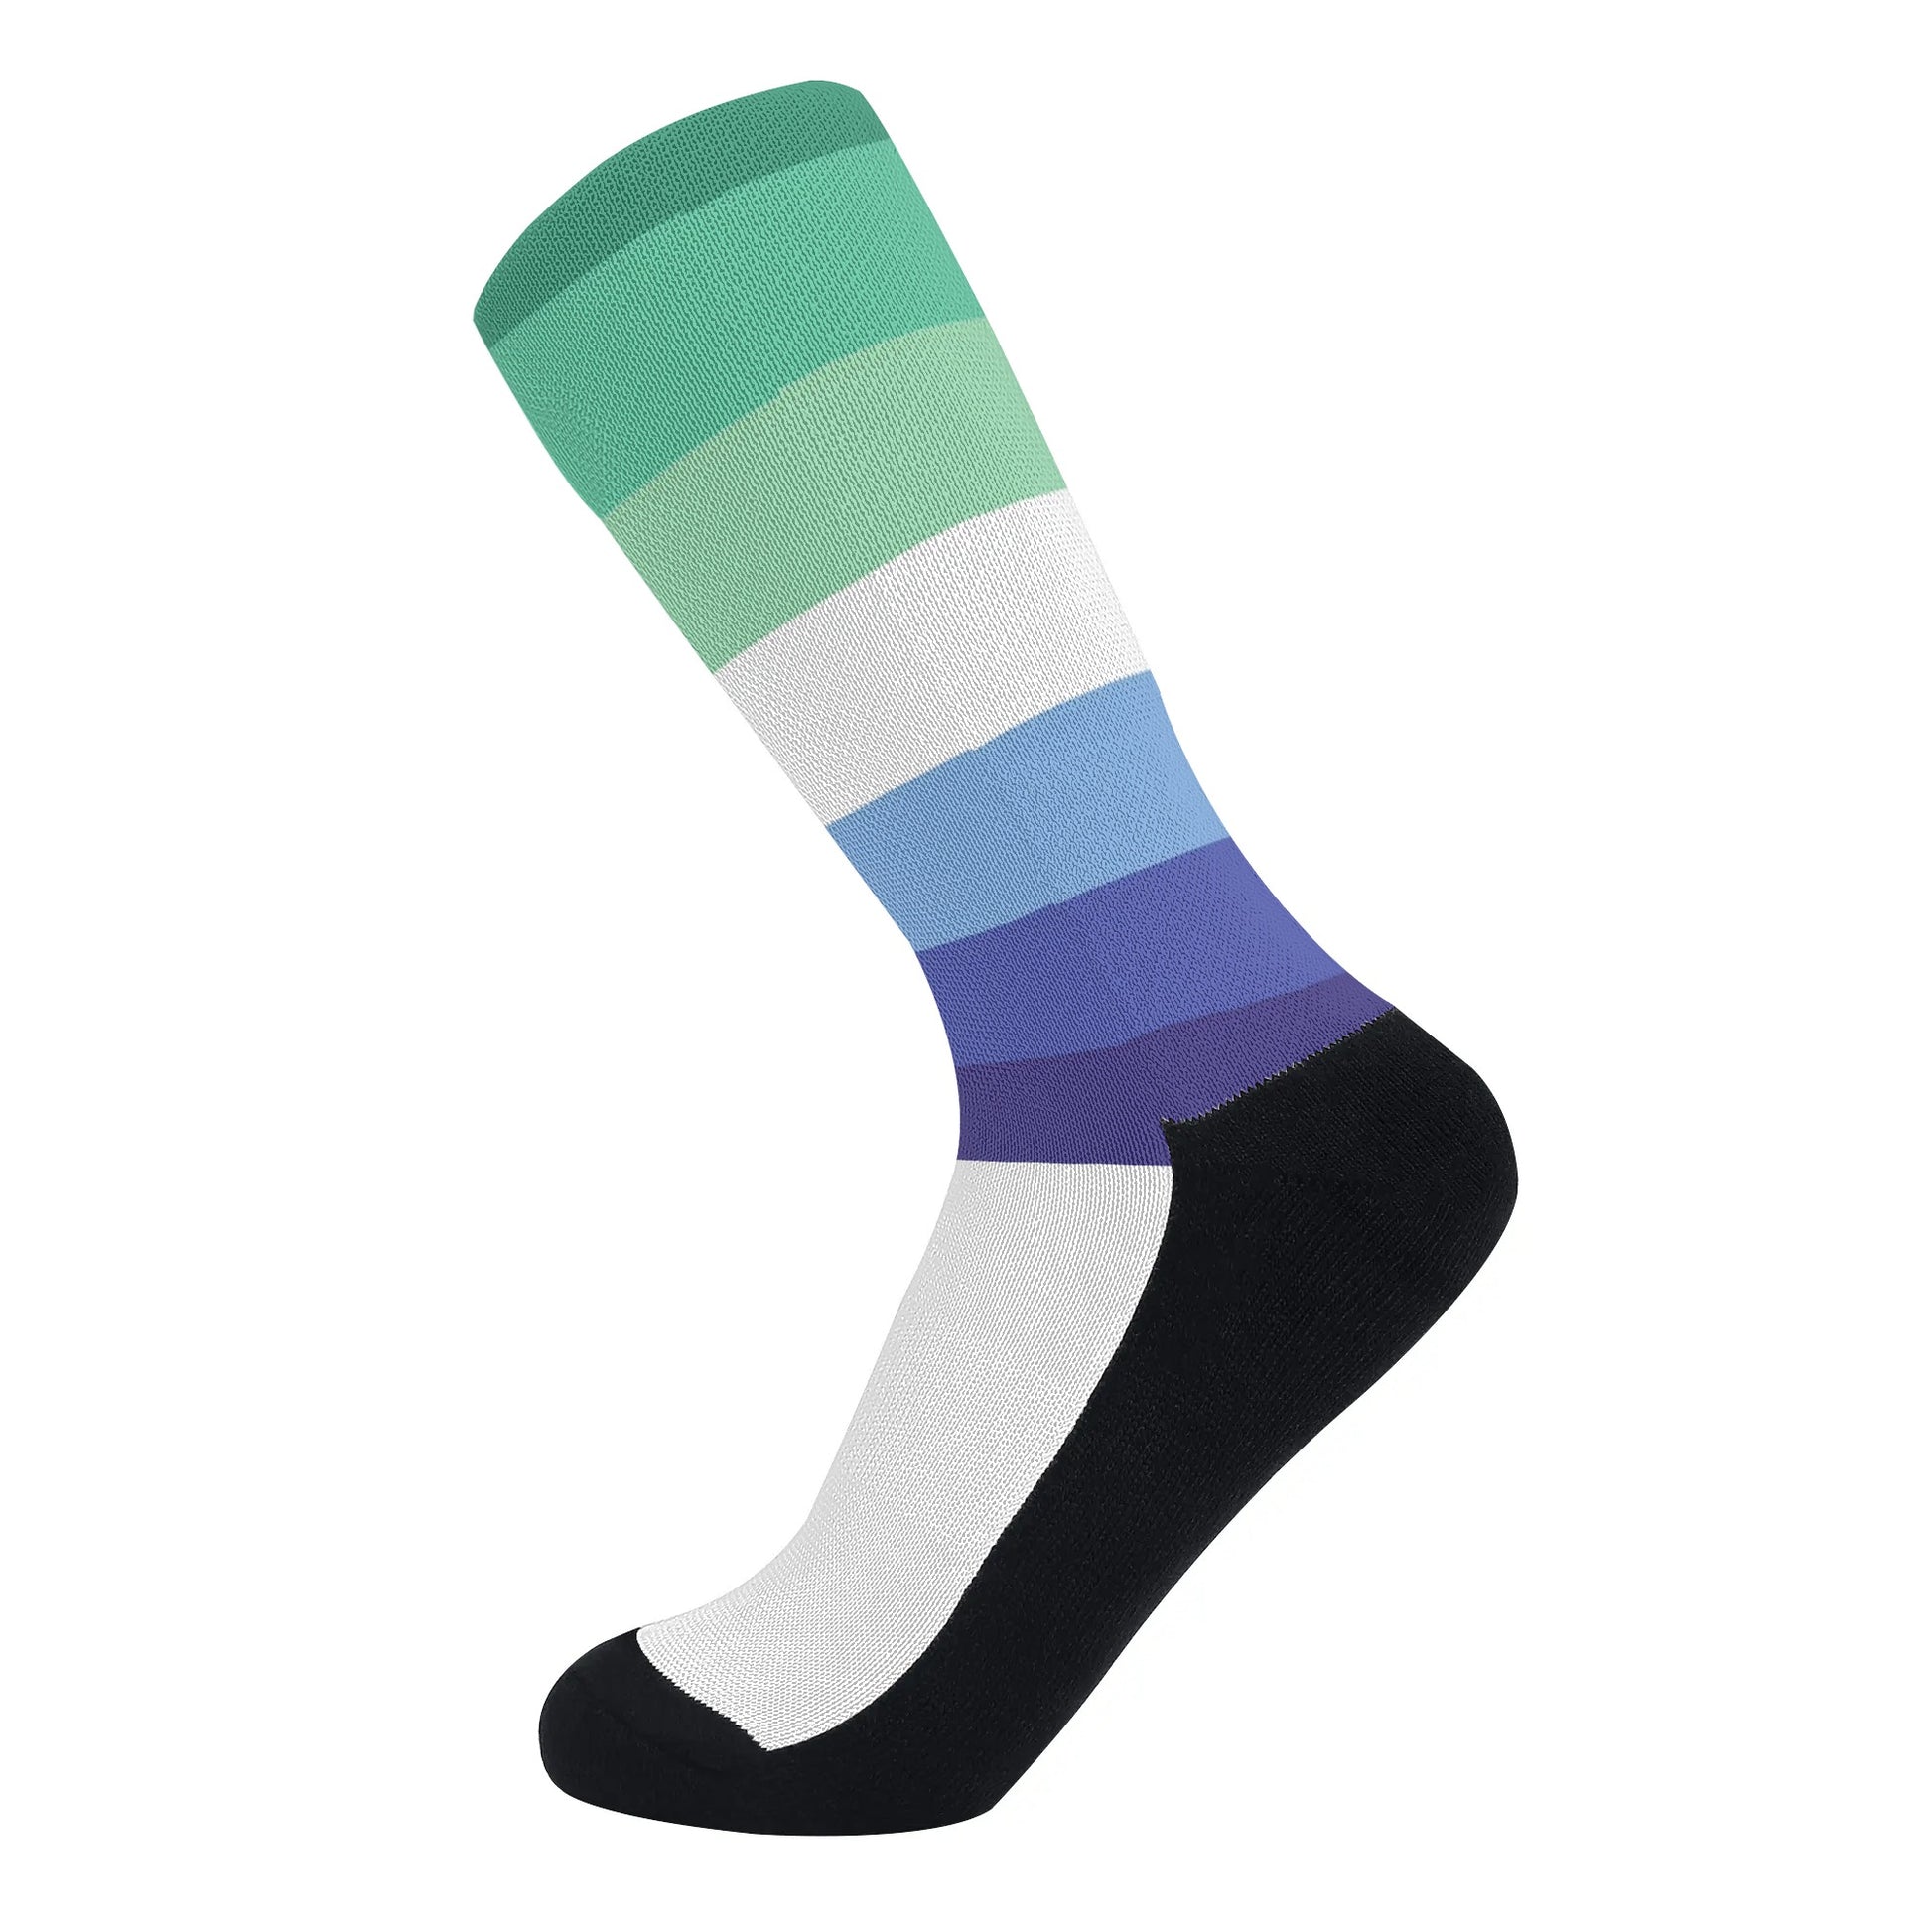 MLM Pride Flag Crew Socks - Rose Gold Co. Shop